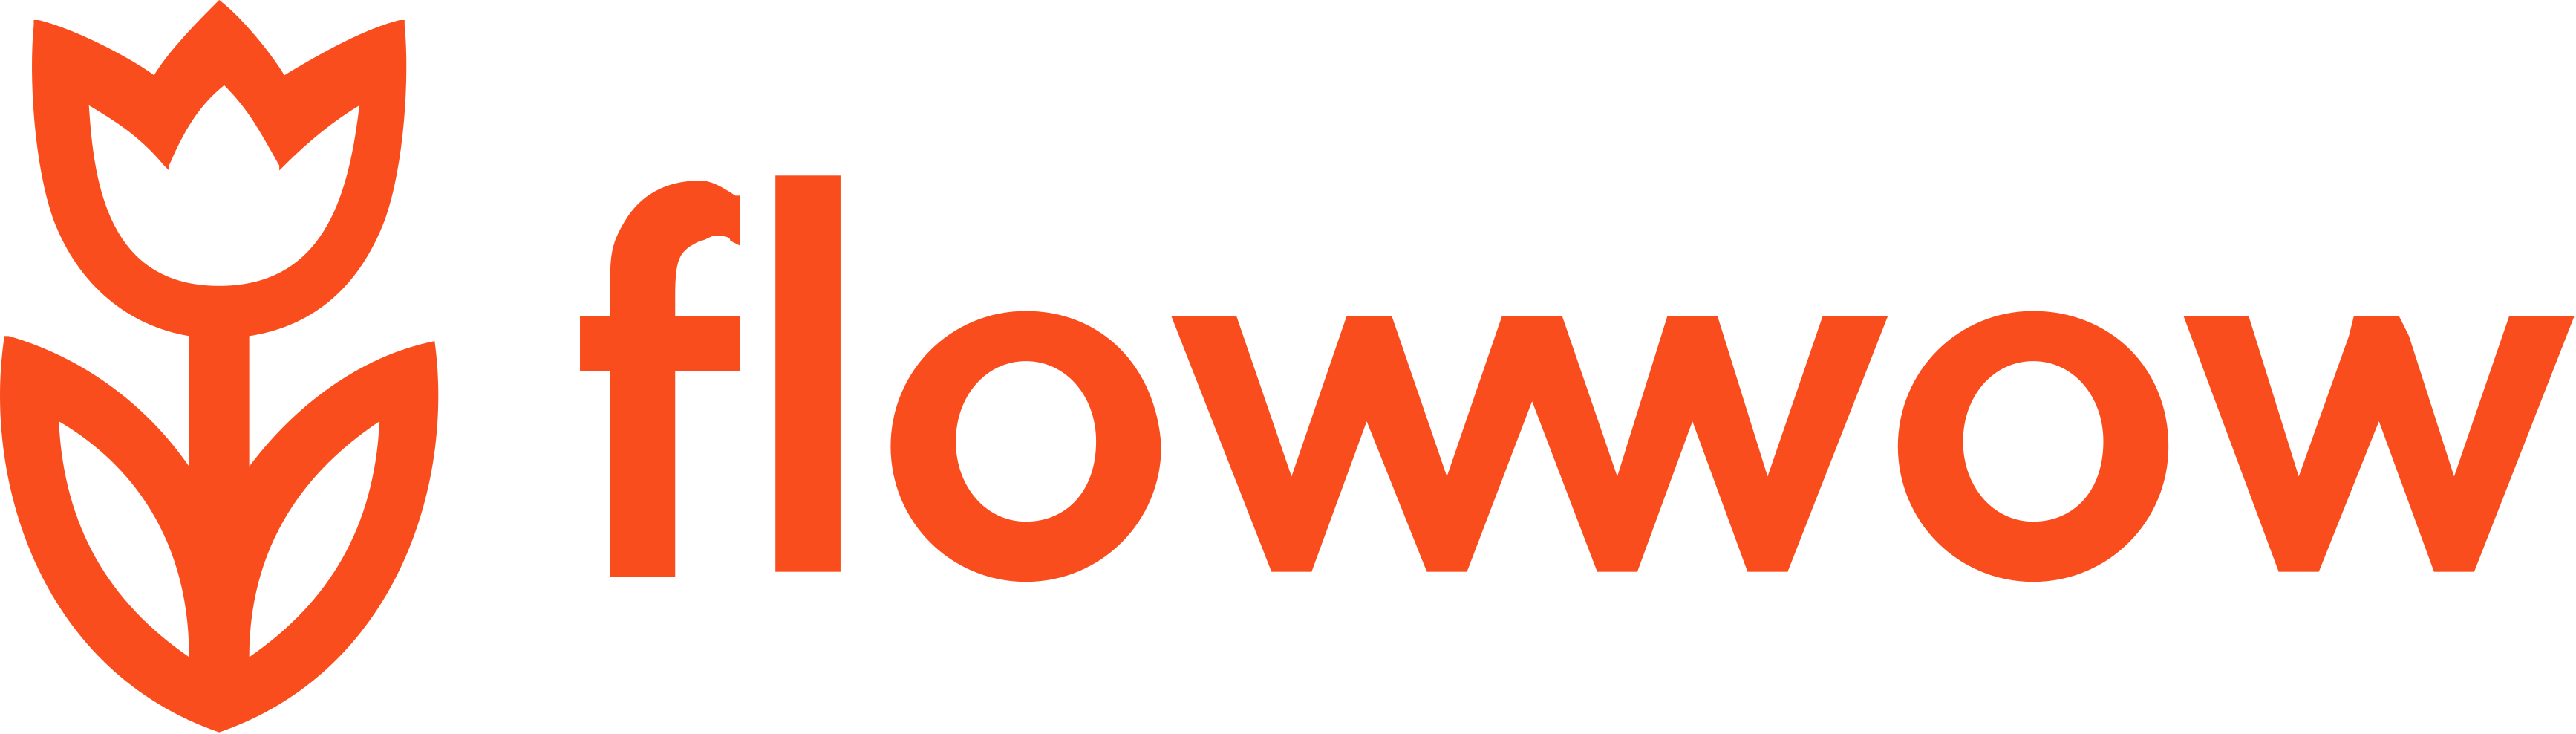 Флоувов. Flowwow. Flowwow значок. ФЛАУ вау. ФЛАУВАУ логотип.